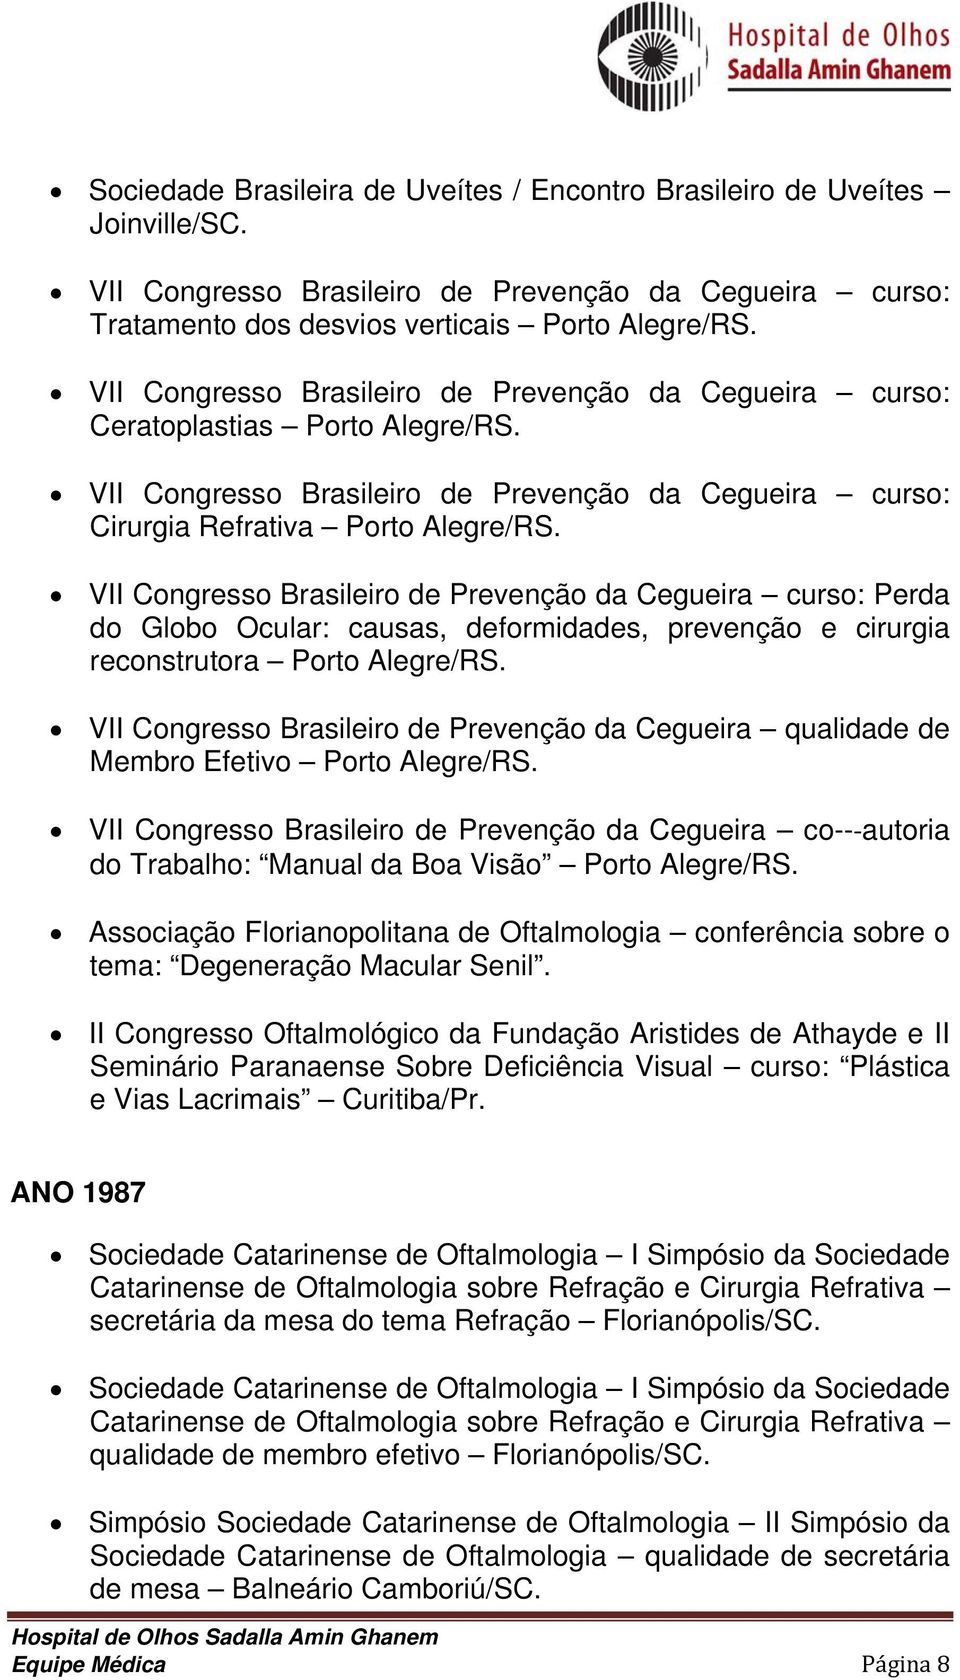 VII Congresso Brasileiro de Prevenção da Cegueira curso: Perda do Globo Ocular: causas, deformidades, prevenção e cirurgia reconstrutora Porto Alegre/RS.